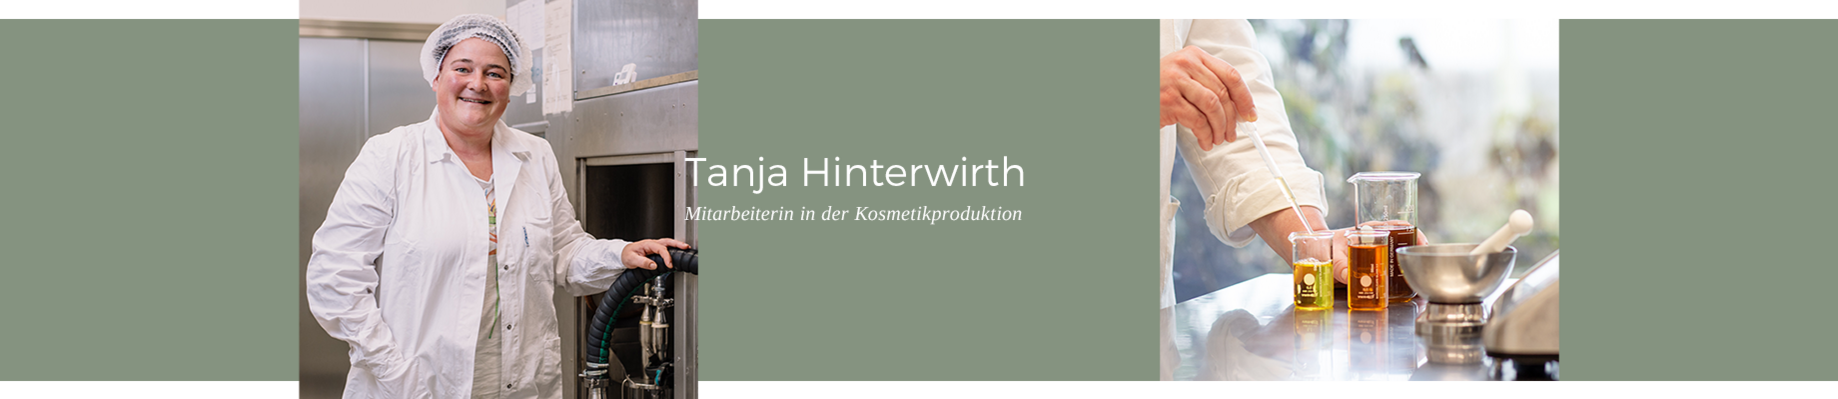 Tanja Hinterwirth -Mitarbeiterin in der Kosmetikproduktion